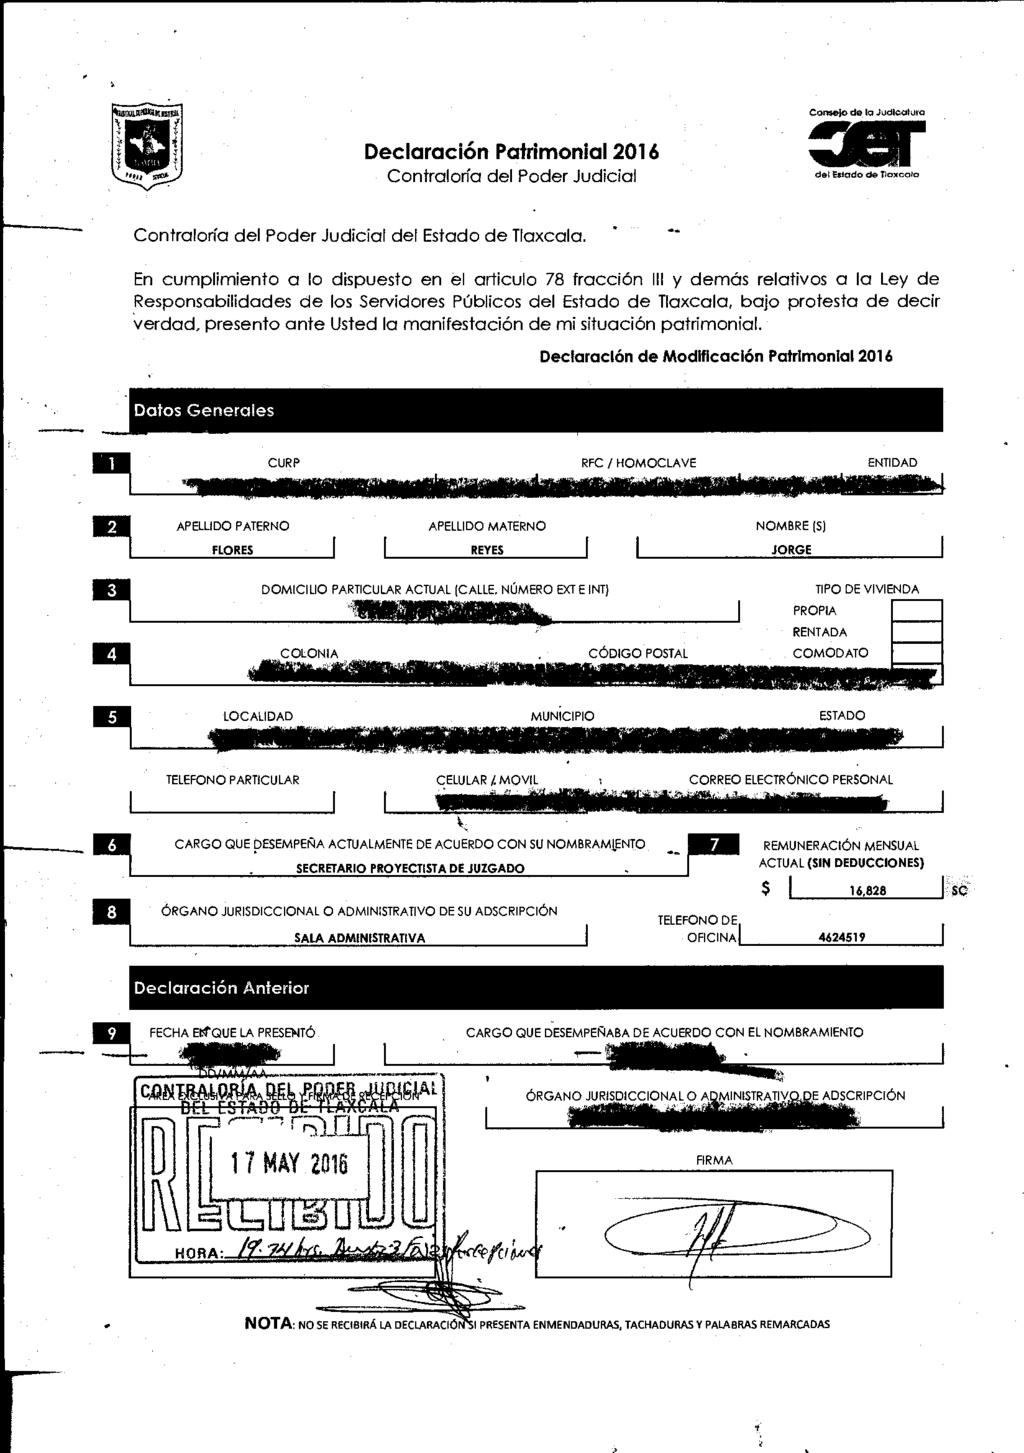 Declaración Patrimonial 206 Contraloría del Poder Judicial air Con:Med* b Judicatura del Ettiodo de Tlaxcala Contraloría del Poder Judicial del Estado de Tlaxcala.